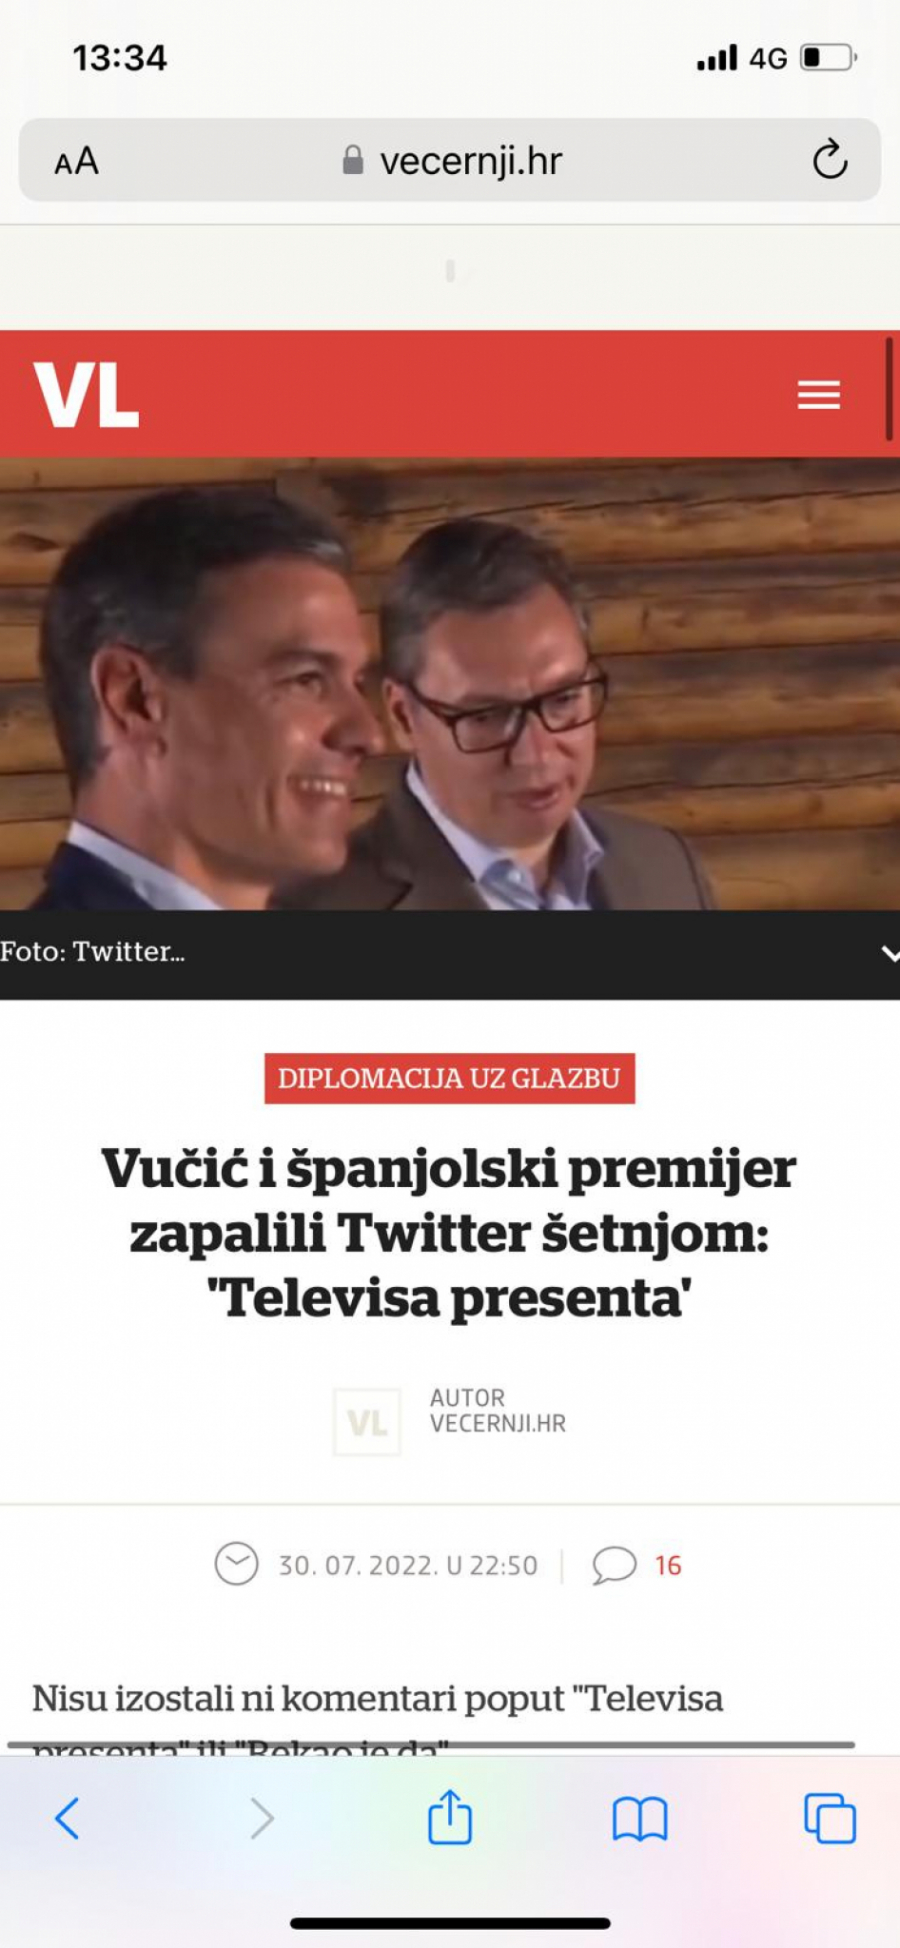 USTAŠA NE SME PRED VUČIĆEM NI DA PISNE Plenković panično nastavio da naručuje pljuvačke tekstove o predsedniku Srbije